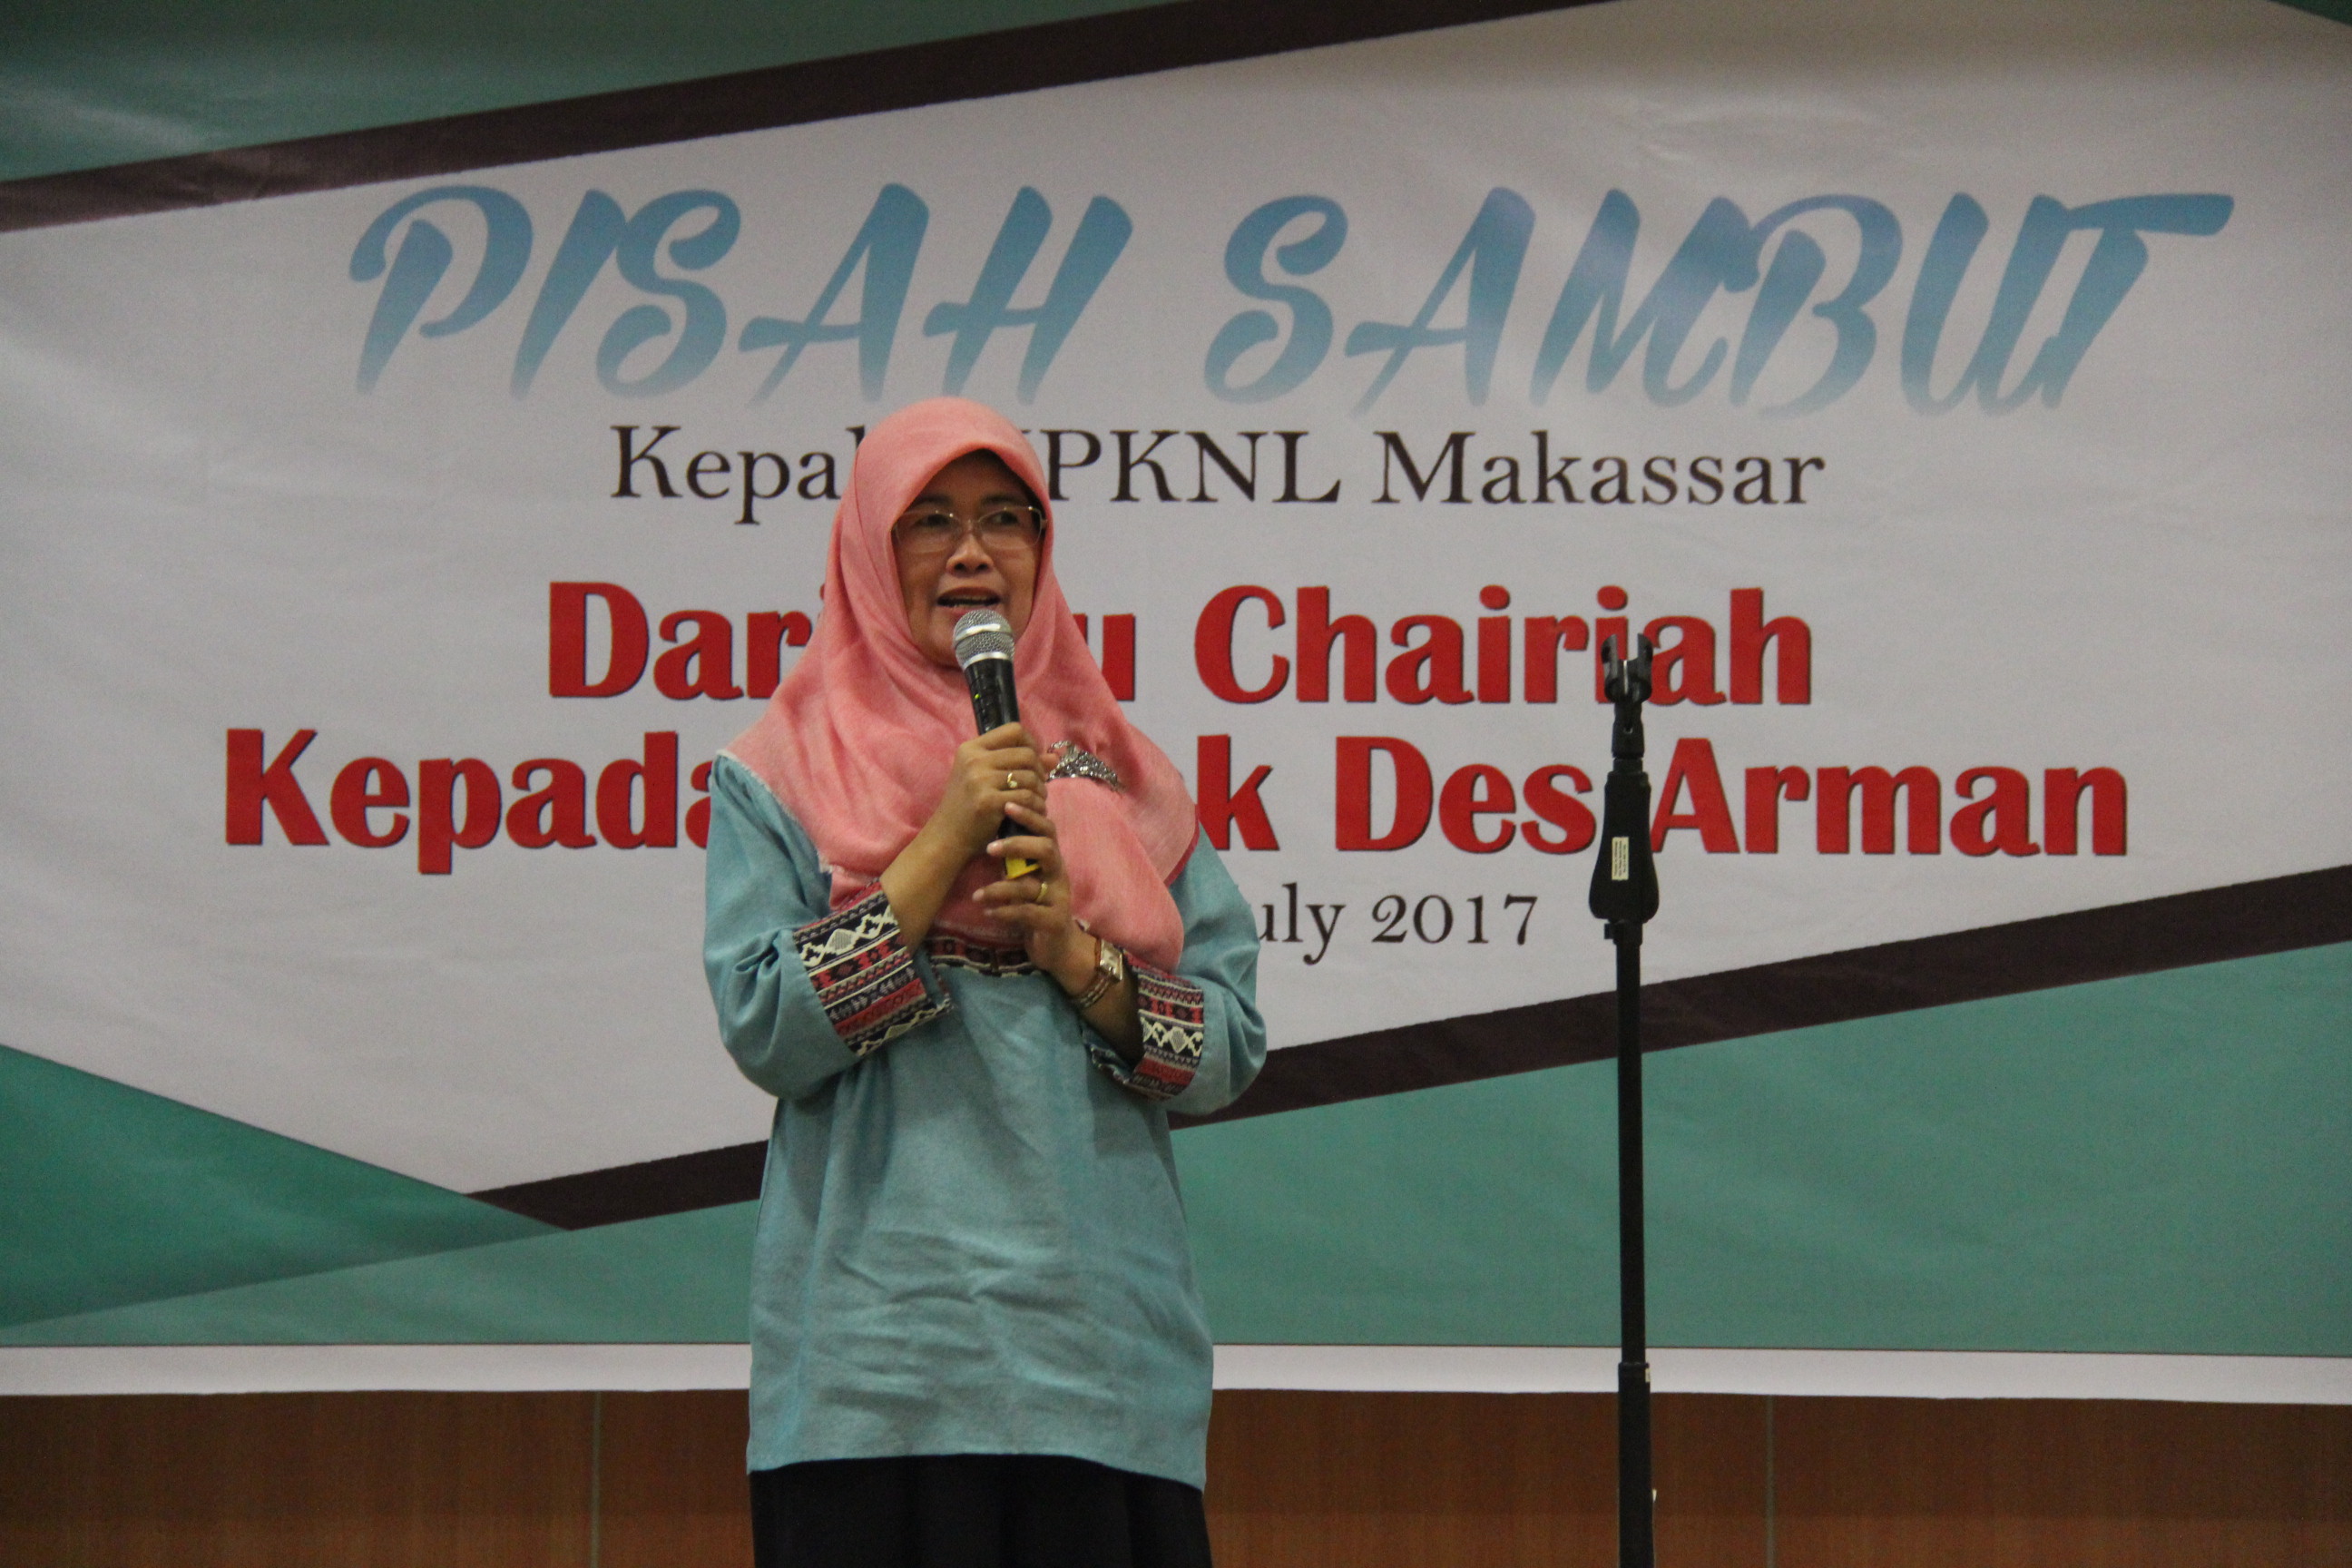 Pisah Sambut Kepala KPKNL Makassar, Pergantian Nakhoda Kepemimpinan yang Berkelanjutan